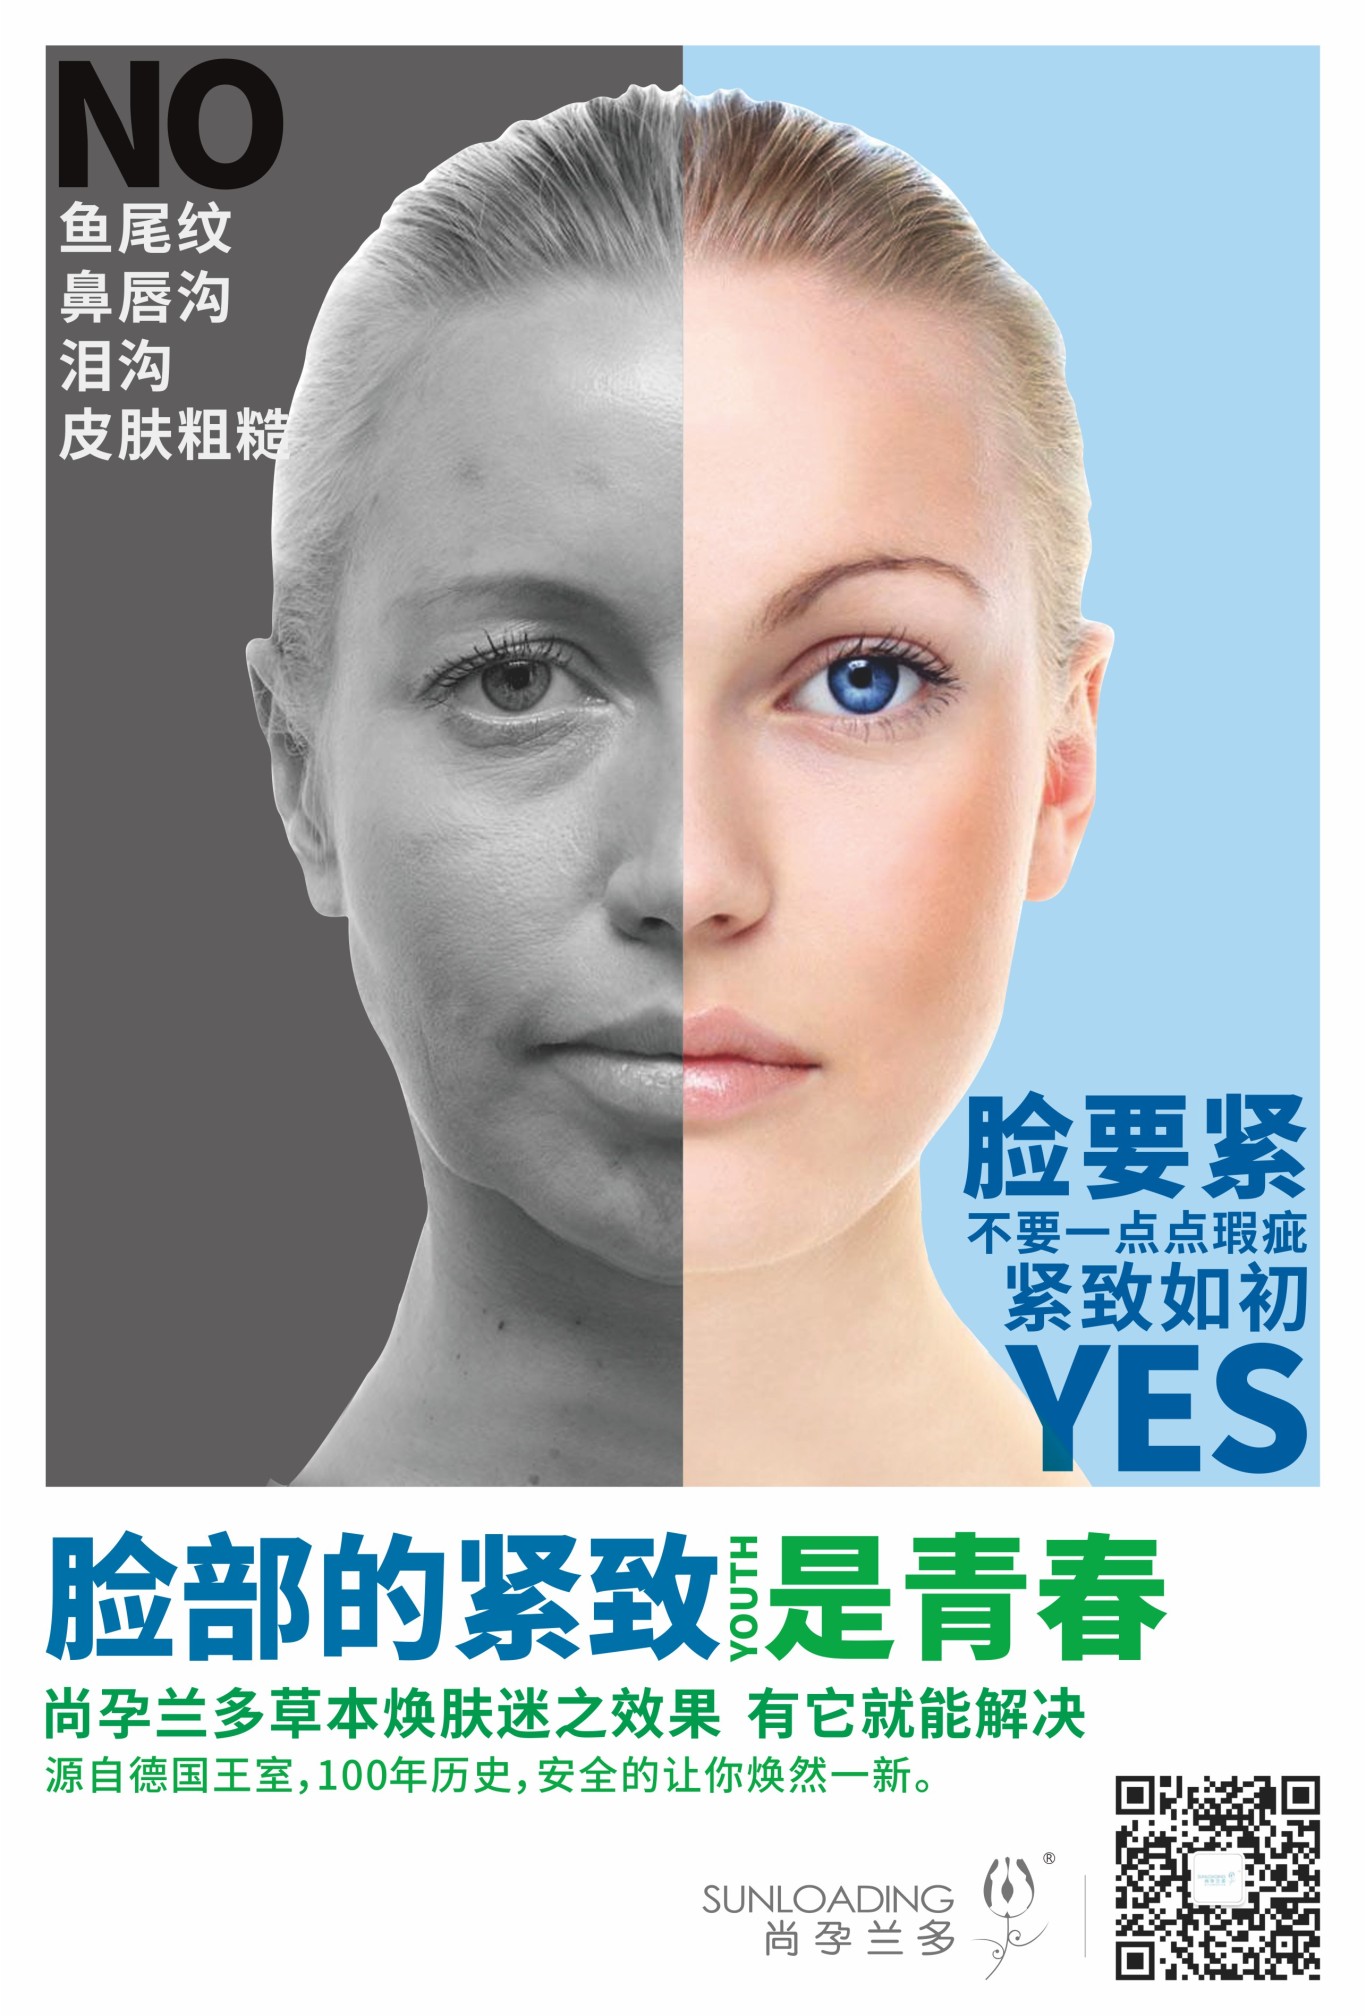 化妆品品牌产品宣传海报设计图0